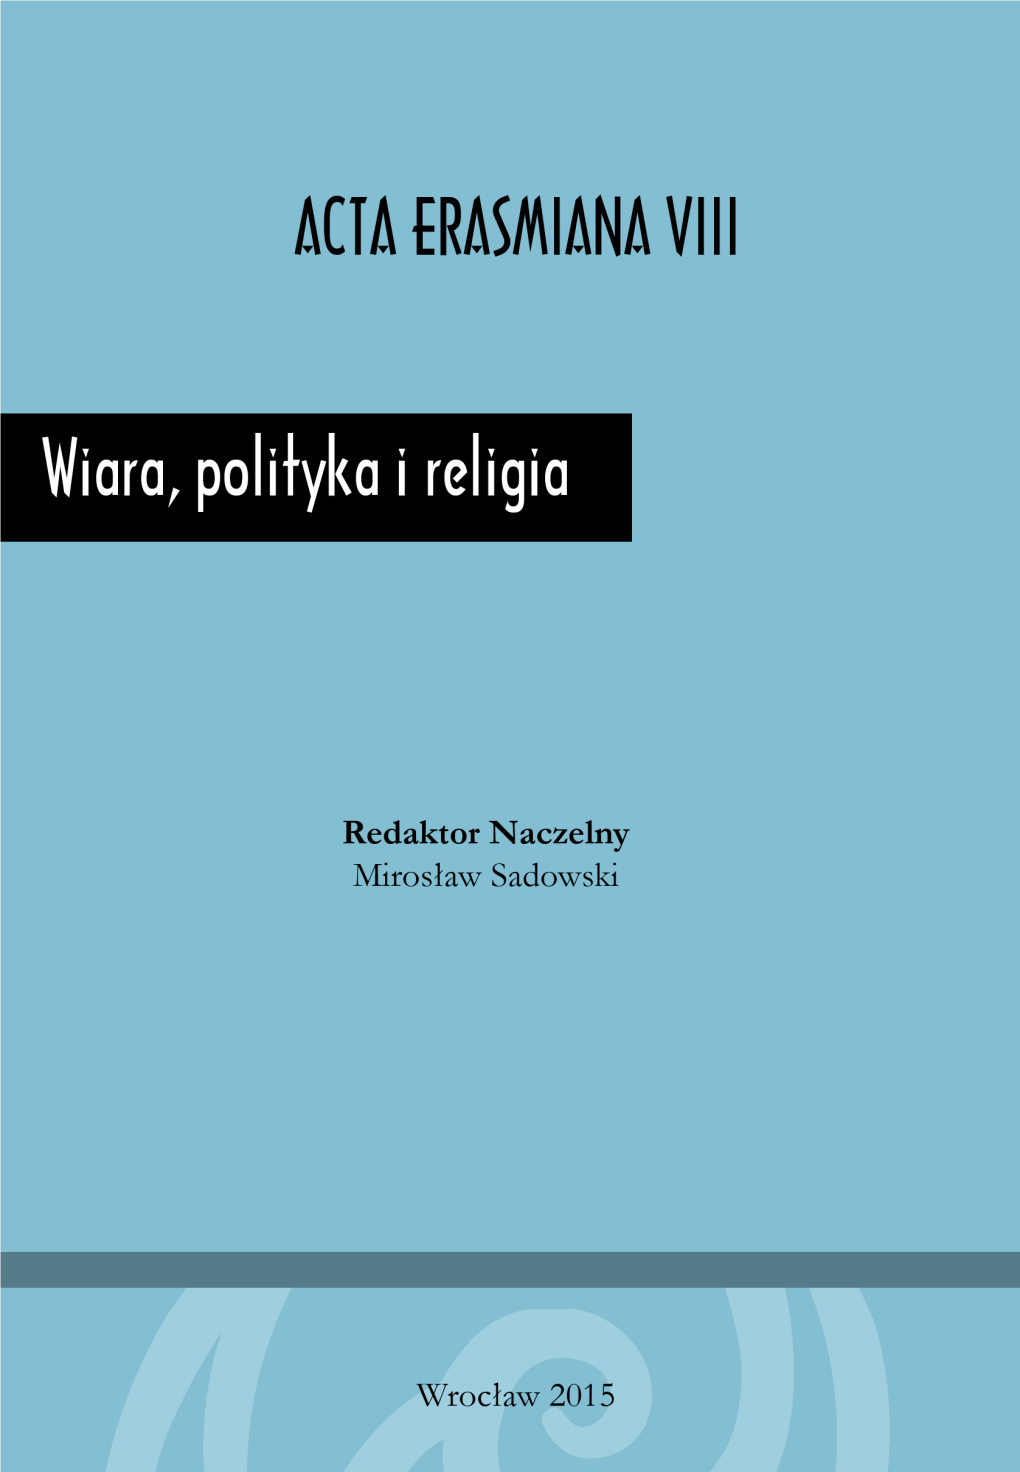 Wiara, Polityka I Religia. Acta Erasmiana VIII